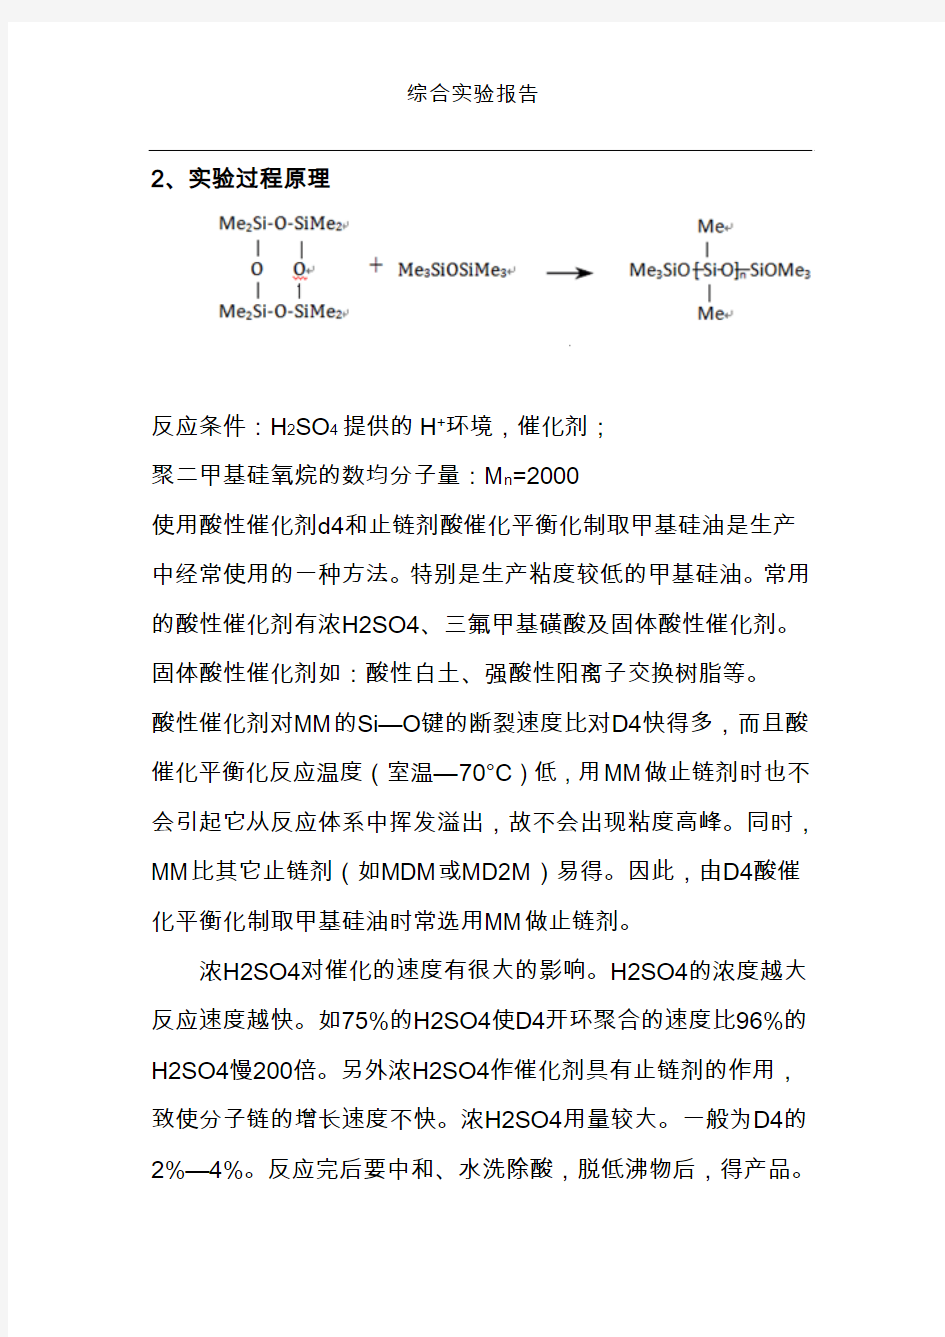 朱庆增老师高分子综合实验报告